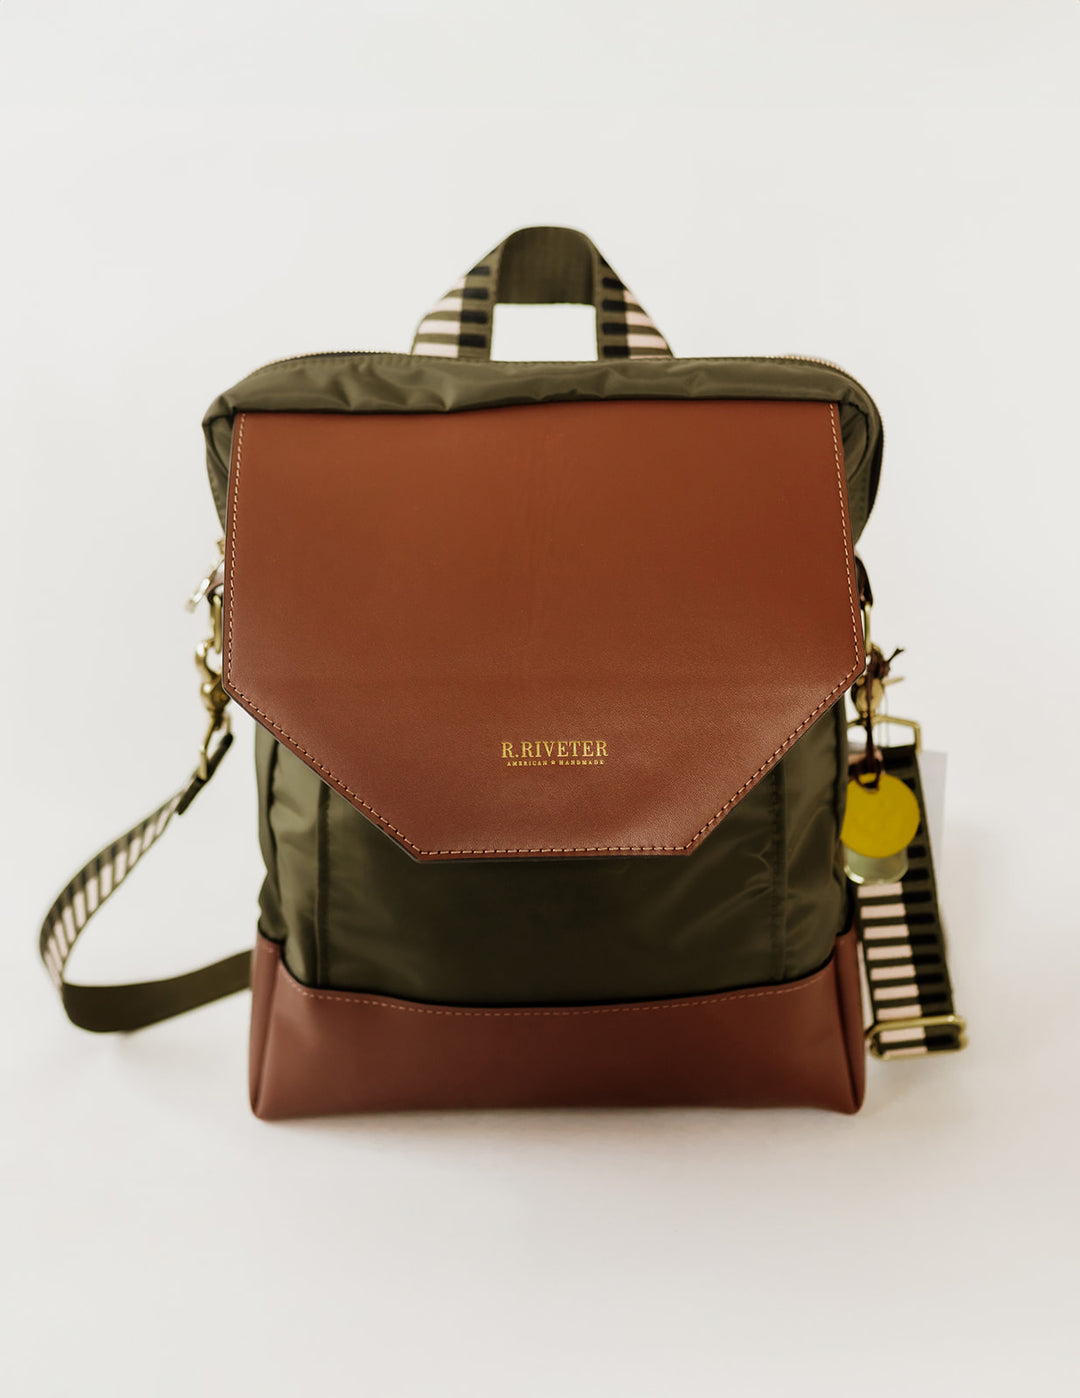 Corbin | Fatigue Nylon + Brown Leather